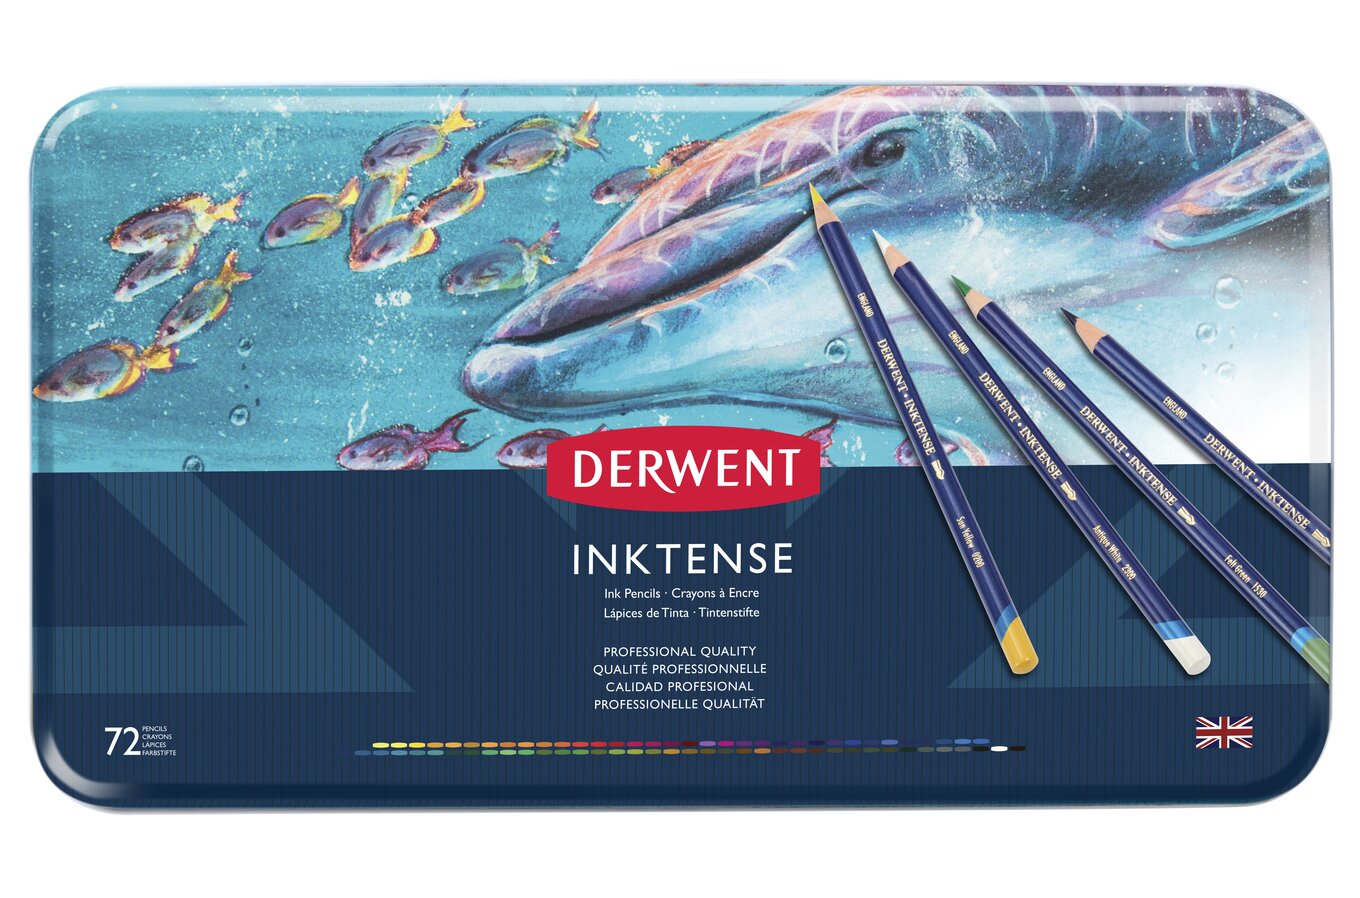 Derwent Inktense Pencil - Sienna Gold (0240) – Everything Mixed Media